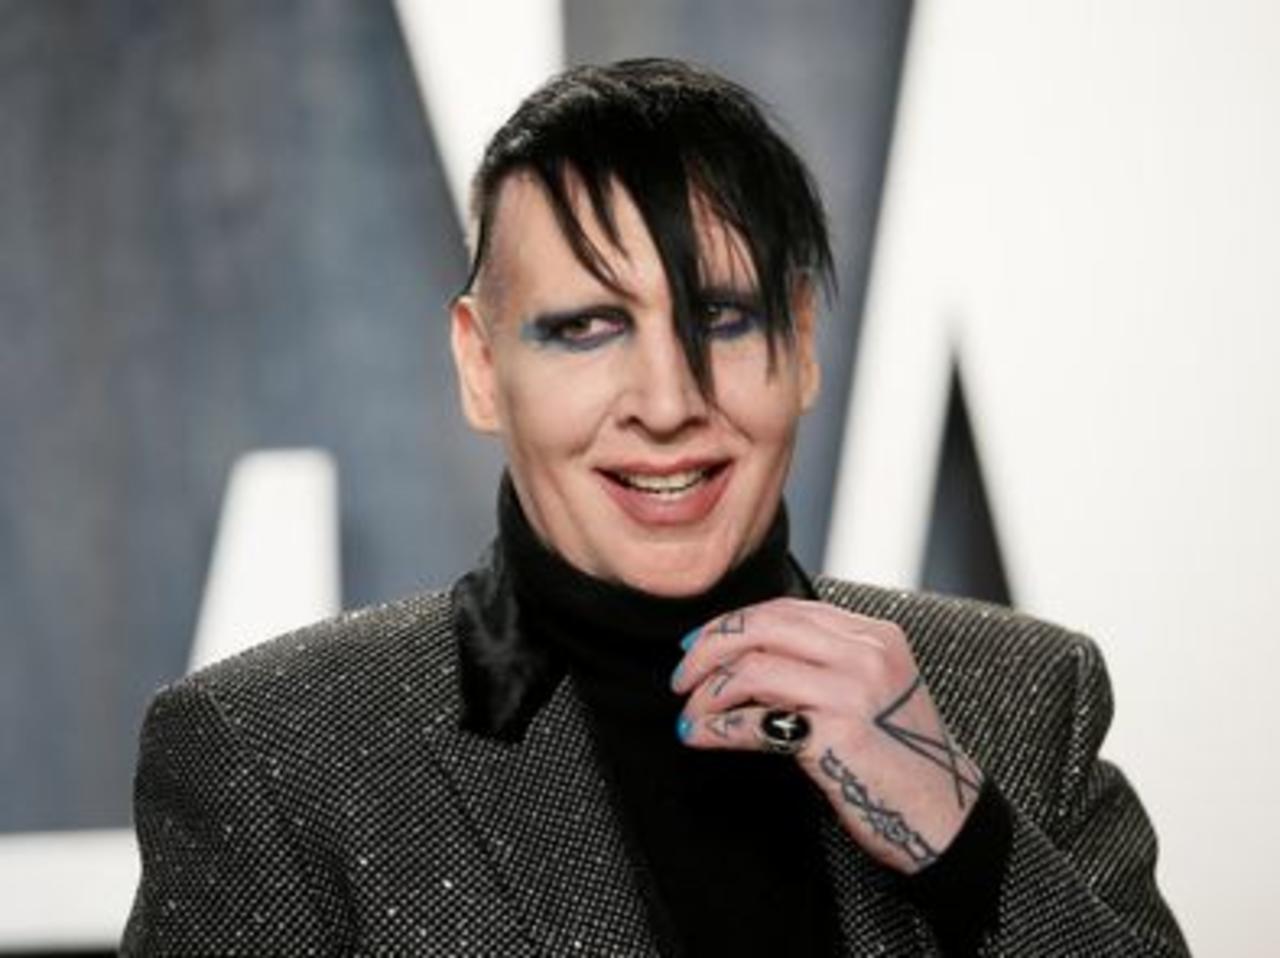 El rockero Marilyn Manson presentó una declaración de inocencia a través de un abogado en un caso de agresión por presuntamente acercarse a una camarógrafa durante su concierto de 2019 en New Hampshire, escupirle y soplarle mocos.